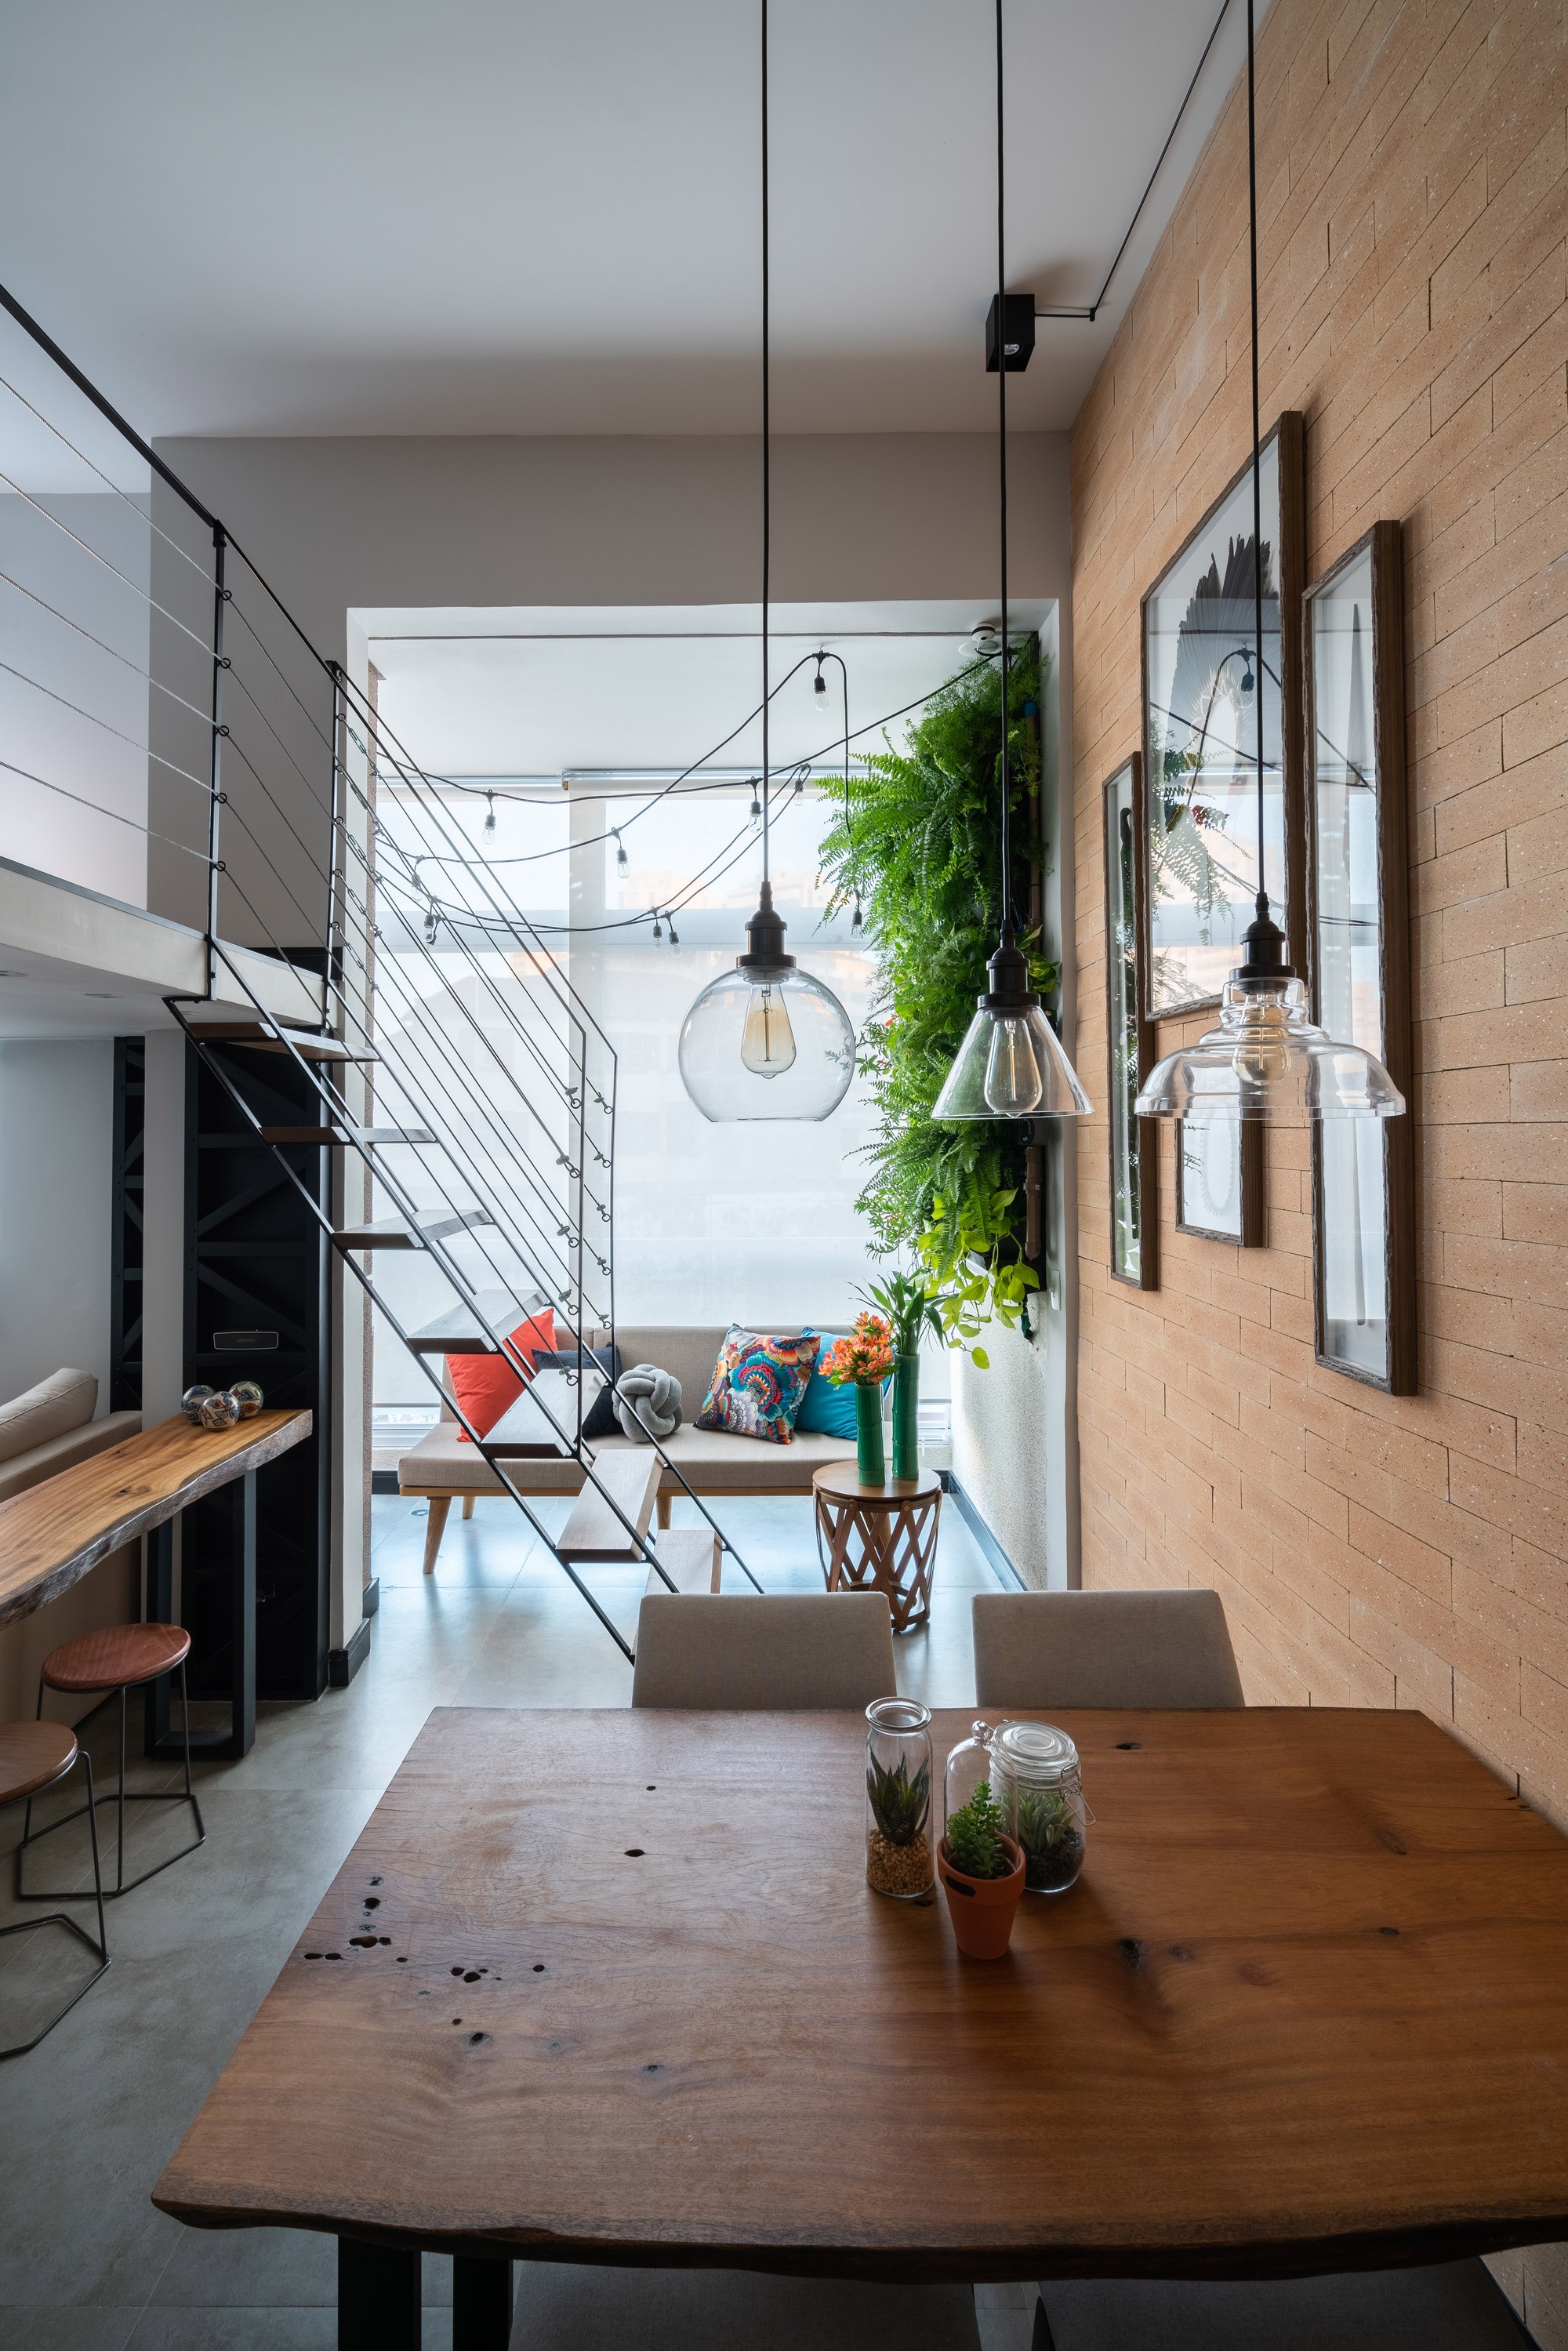 Décor do dia: sala de jantar integrada em loft industrial (Foto: Kadu Lopes)